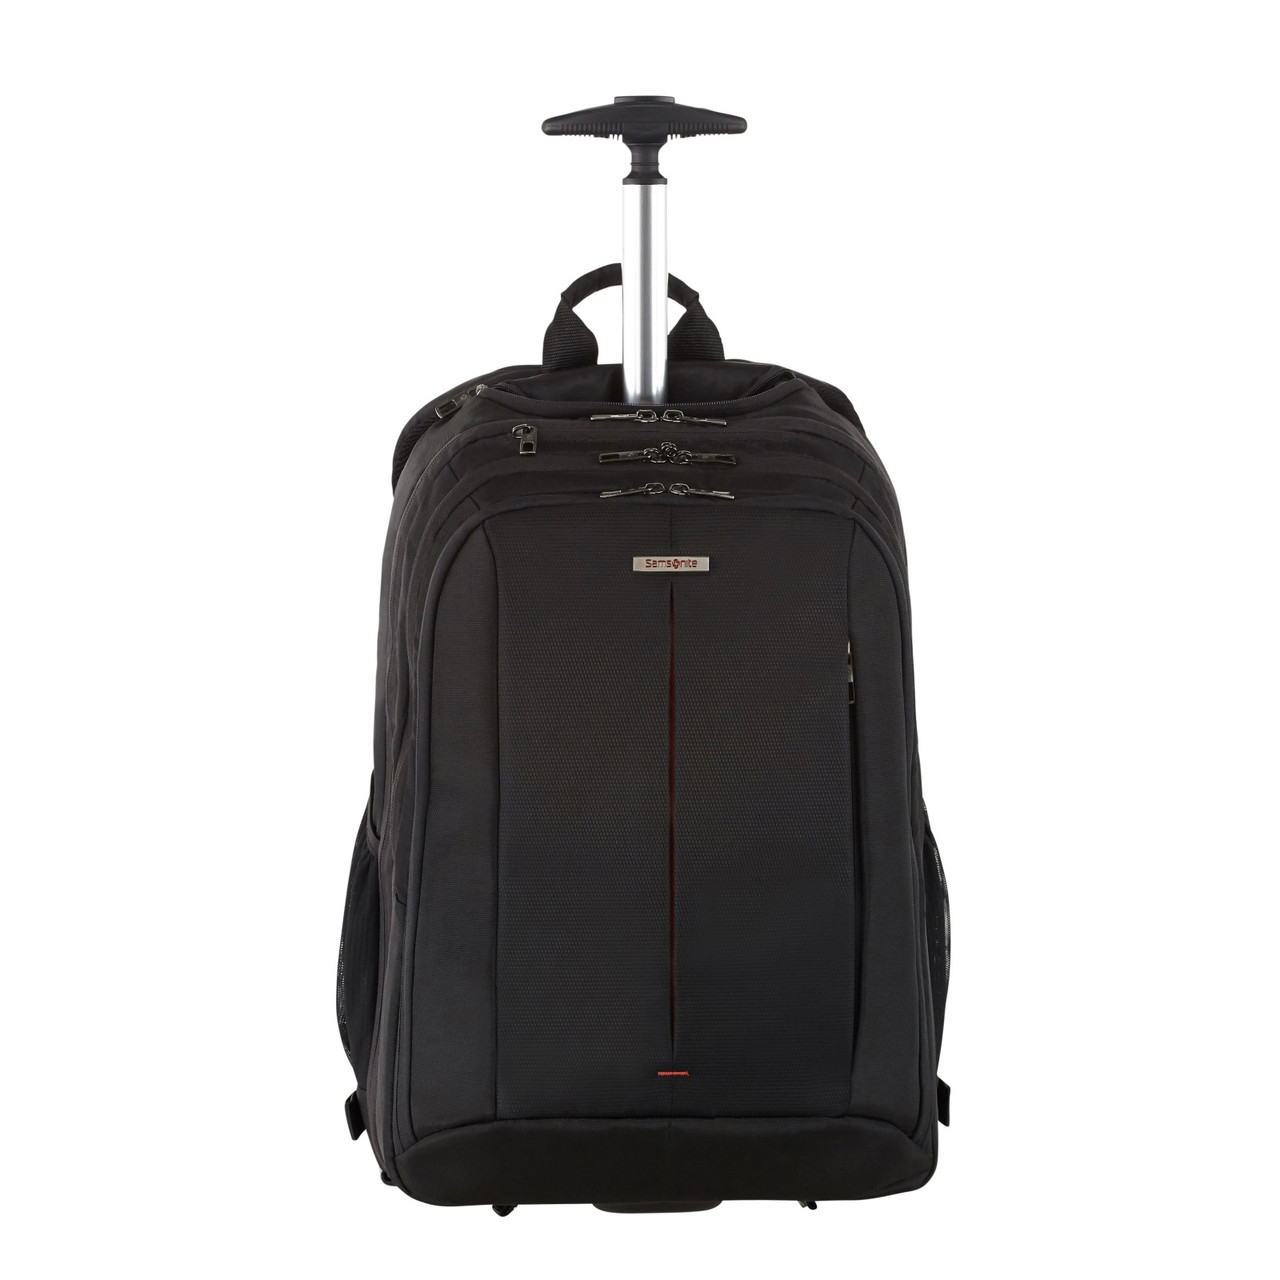 Top more than 150 backpack trolley bag best - esthdonghoadian